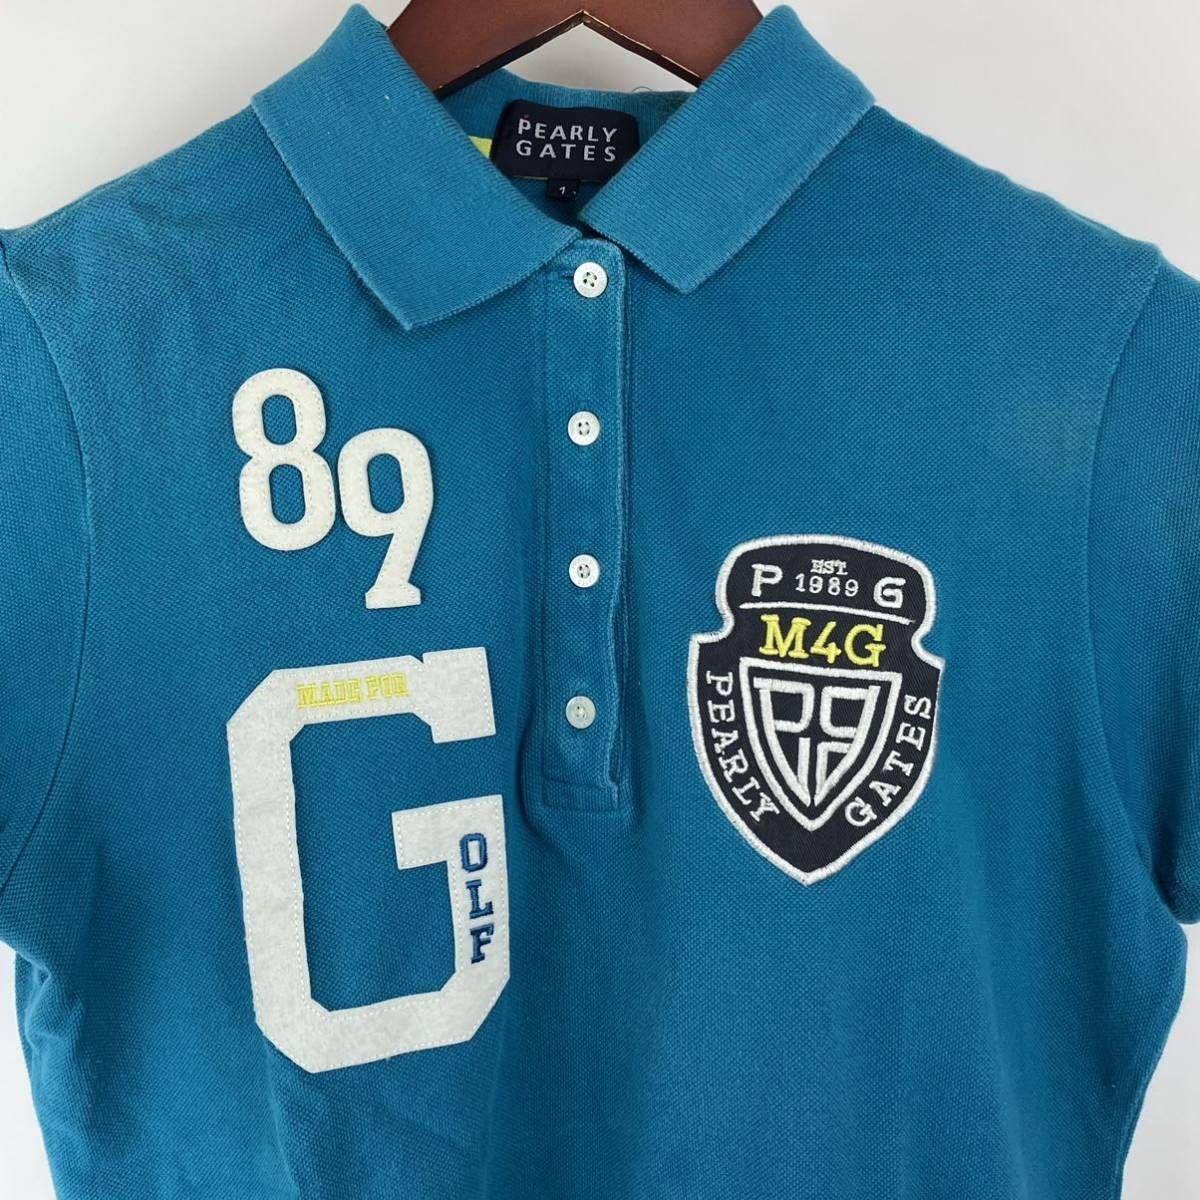 PEARLY GATES パーリーゲイツ 半袖 ポロシャツ レディース 1 M 青 ターコイズ ブルー カジュアル スポーツ golf ゴルフ ウェア ロゴ